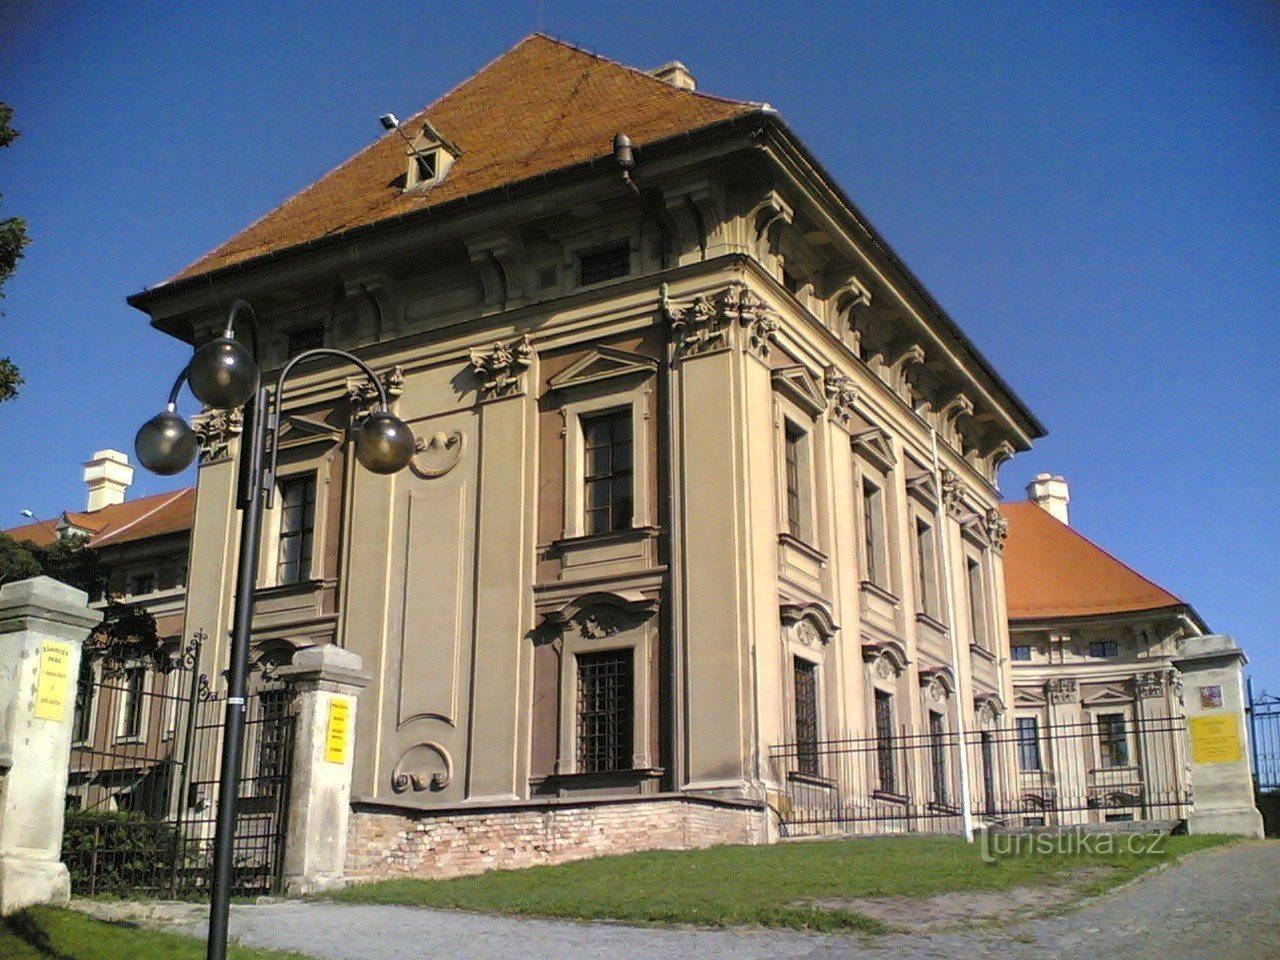 Castello Slavkov vicino a Brno - Austerlitz